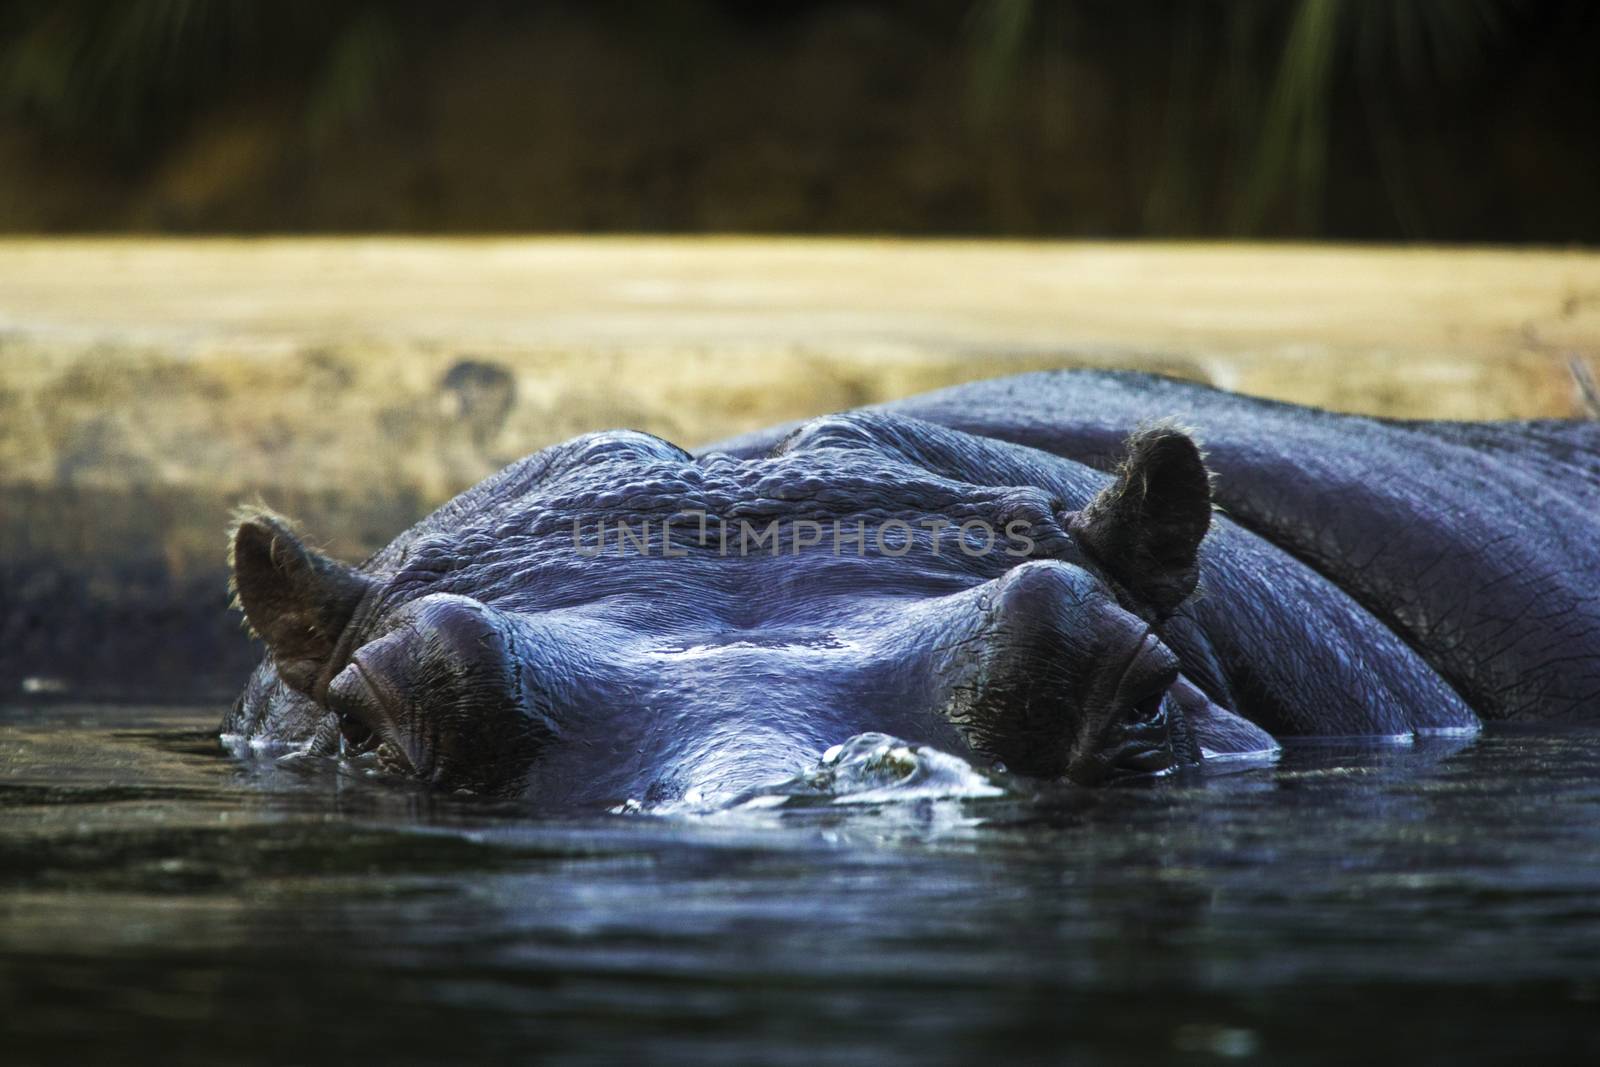 Hippopotamus in the water, Berlin by Taidundua